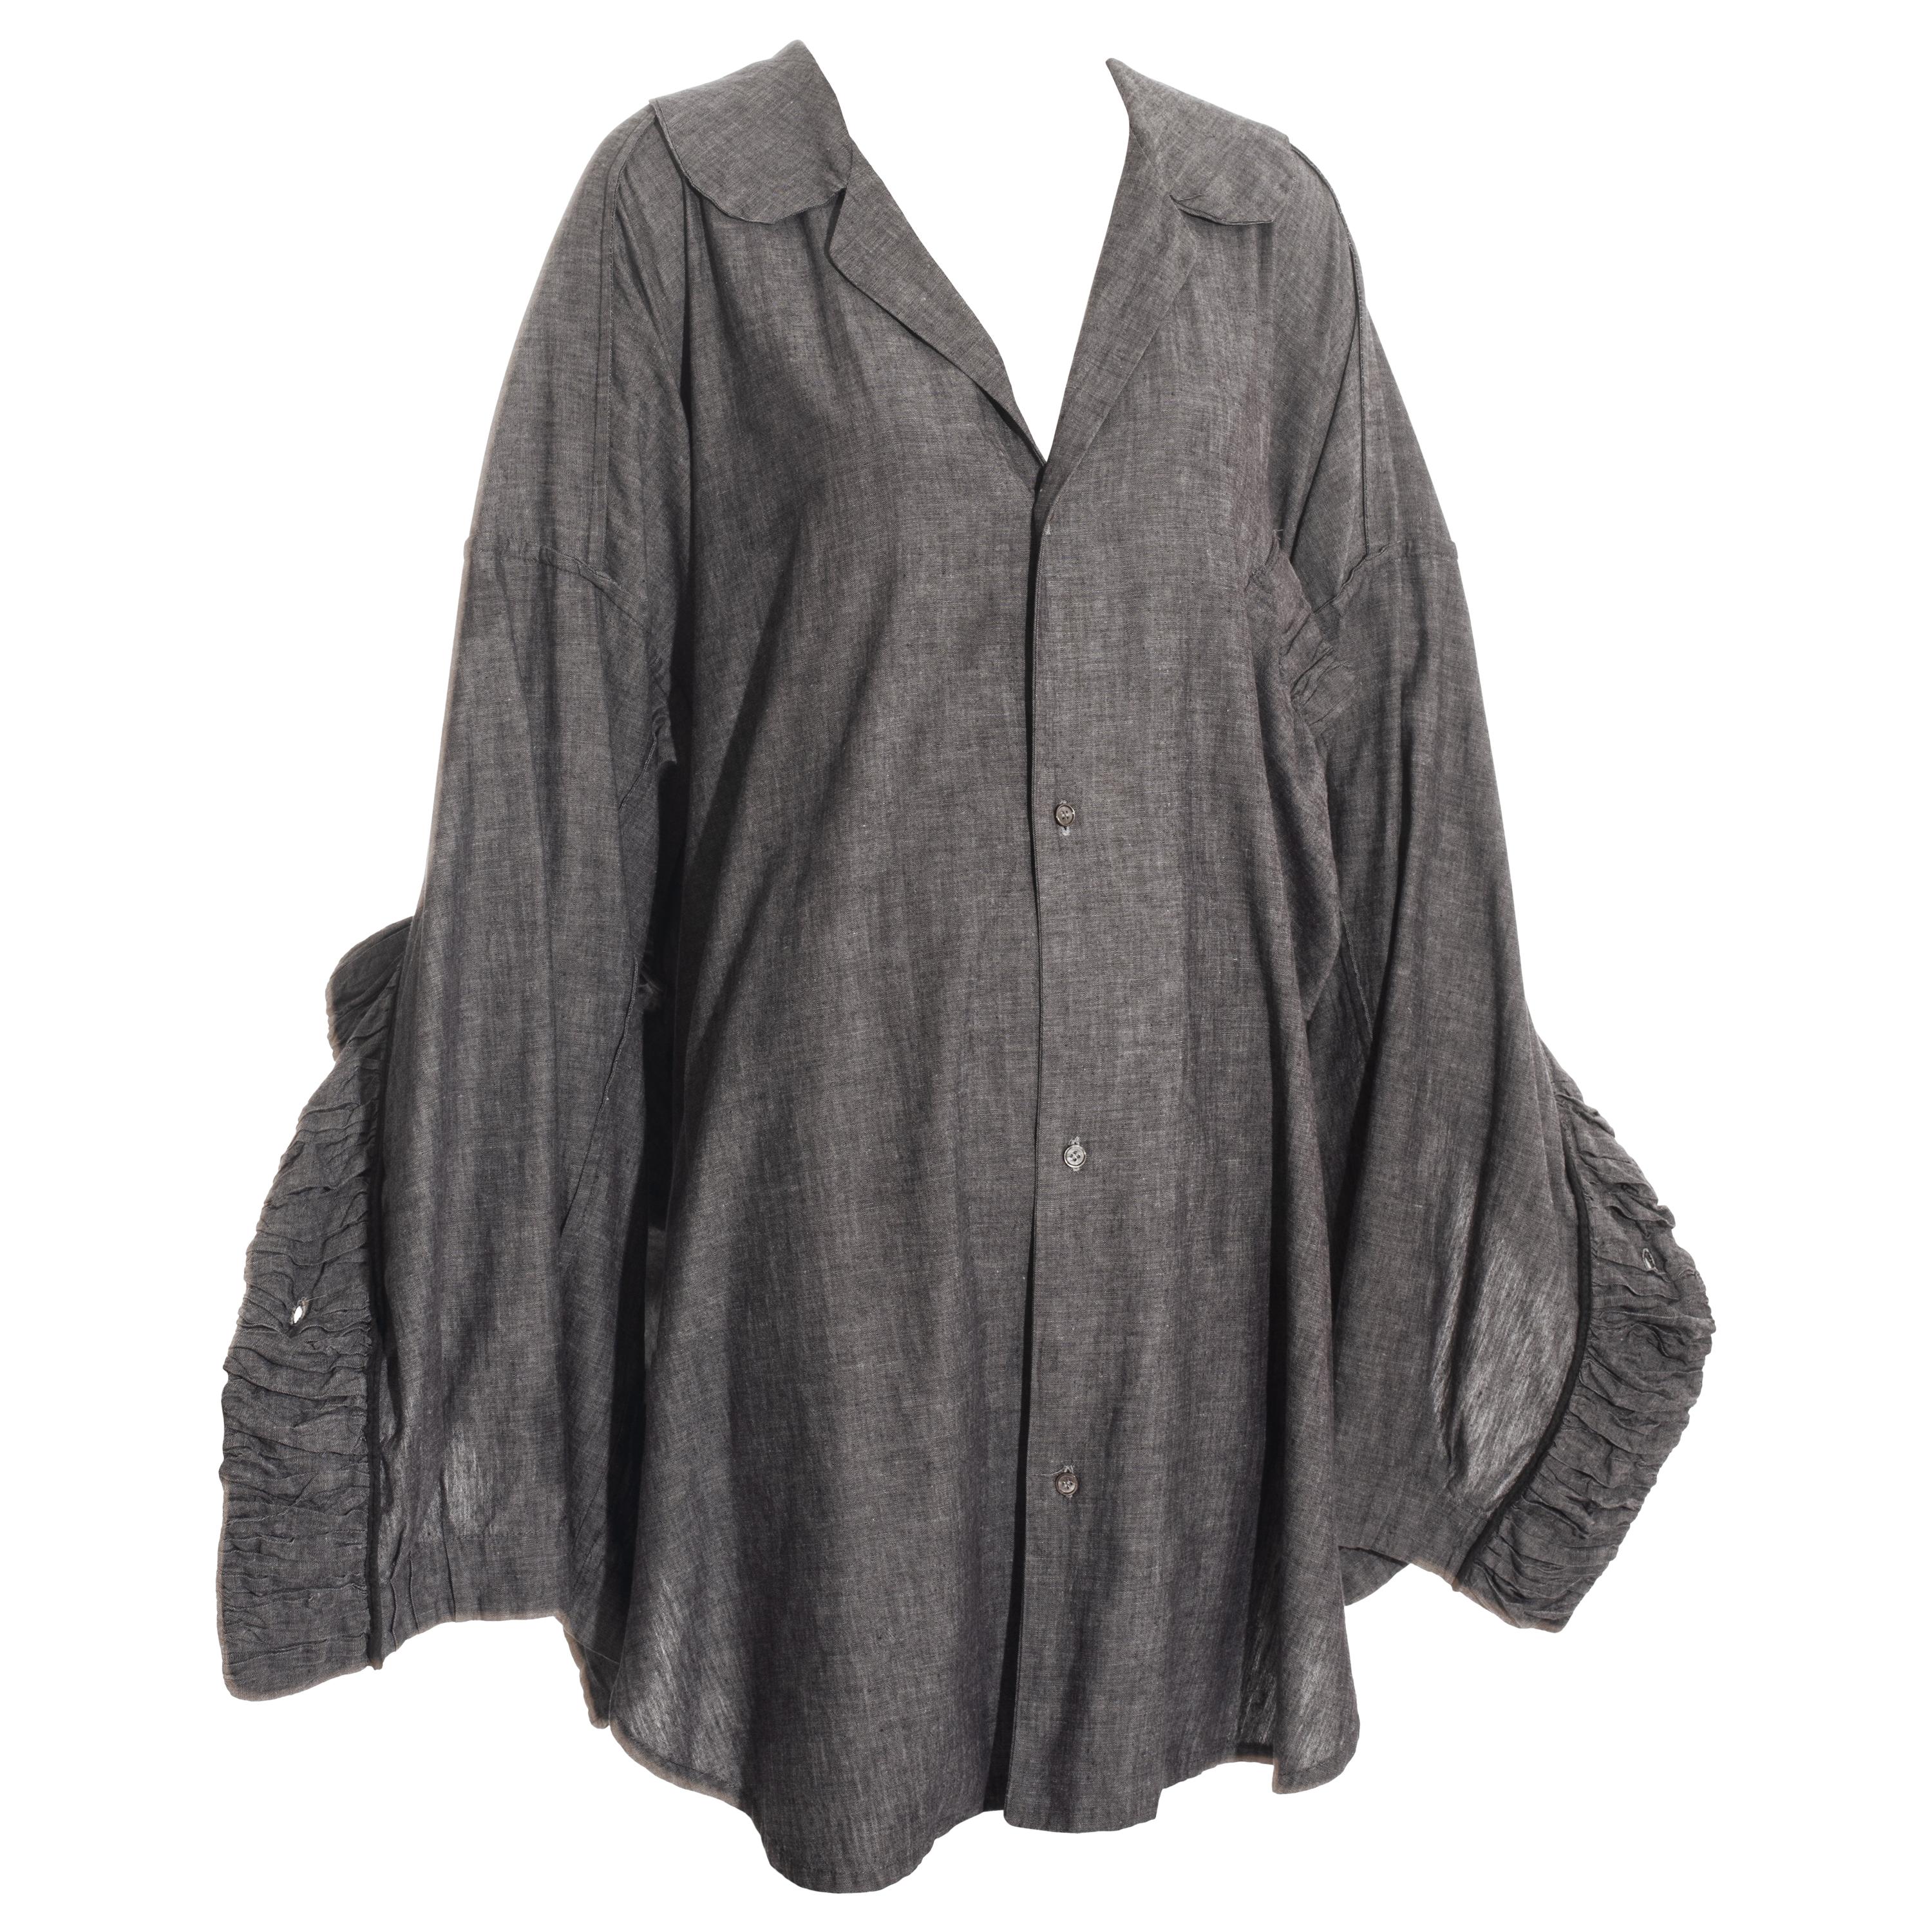 John Galliano grey linen oversized button-up shirt, ss 1985